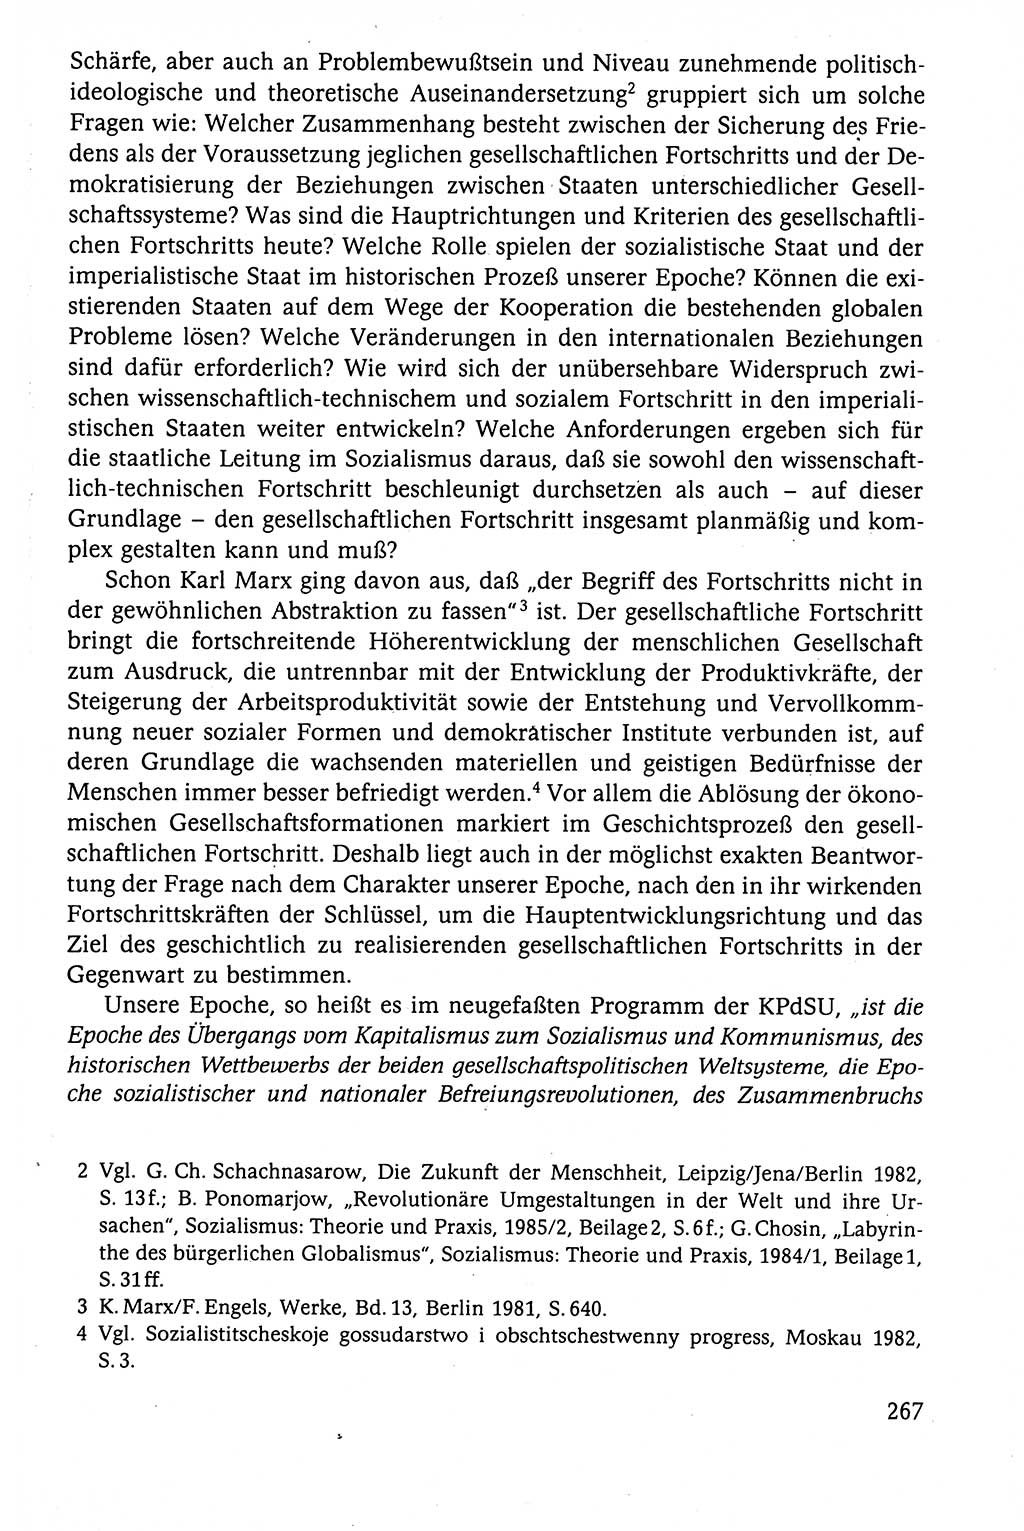 Der Staat im politischen System der DDR (Deutsche Demokratische Republik) 1986, Seite 267 (St. pol. Sys. DDR 1986, S. 267)